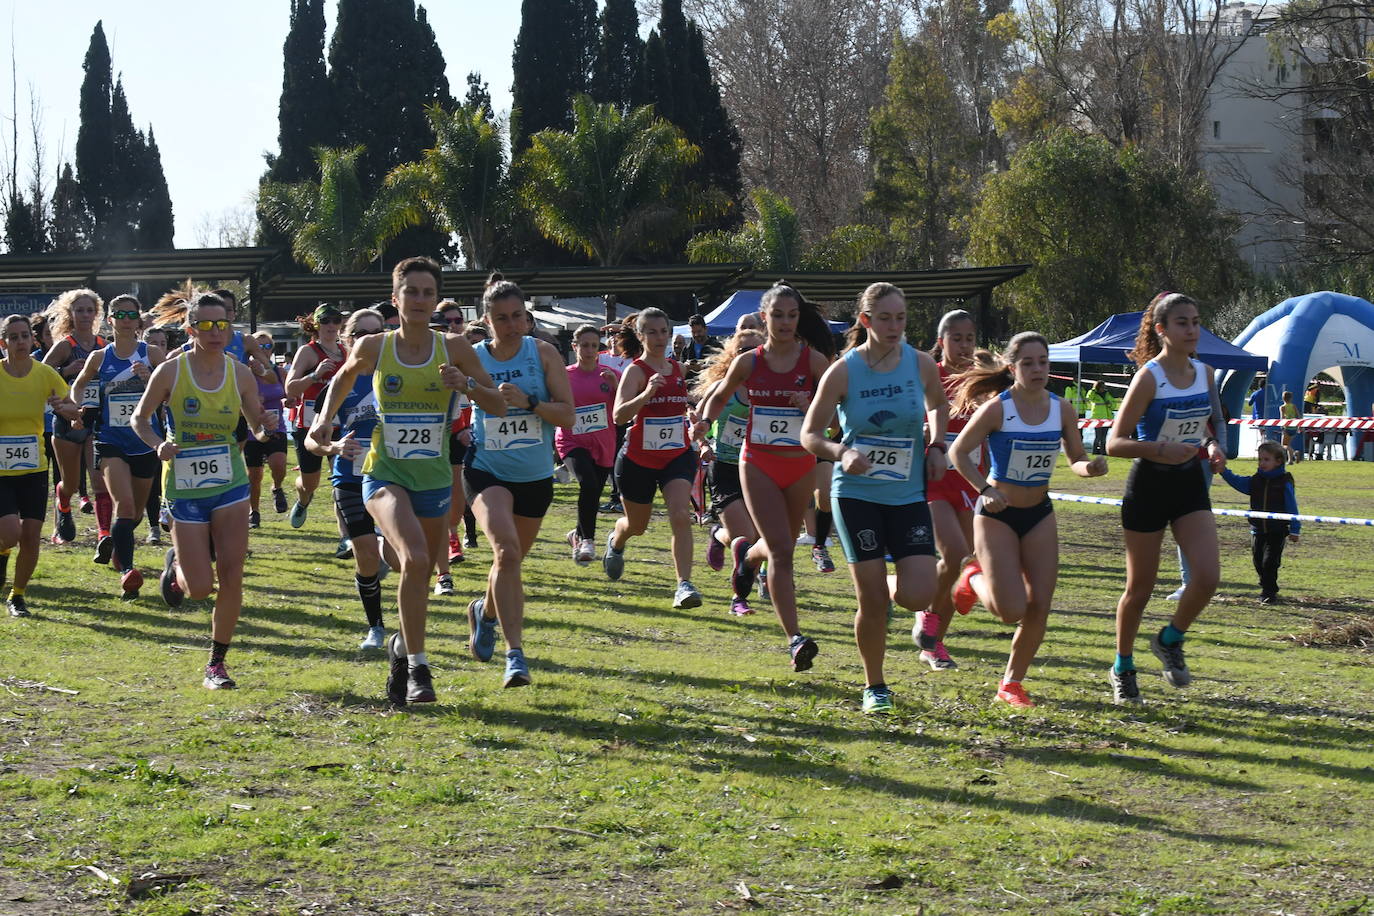 Unos 500 corredores participaron en la prueba del Circuito de Campo a Través de la Diputación de Málaga, en la que Cristian Benítez y Jalaba Enni se alzaron como ganadores.